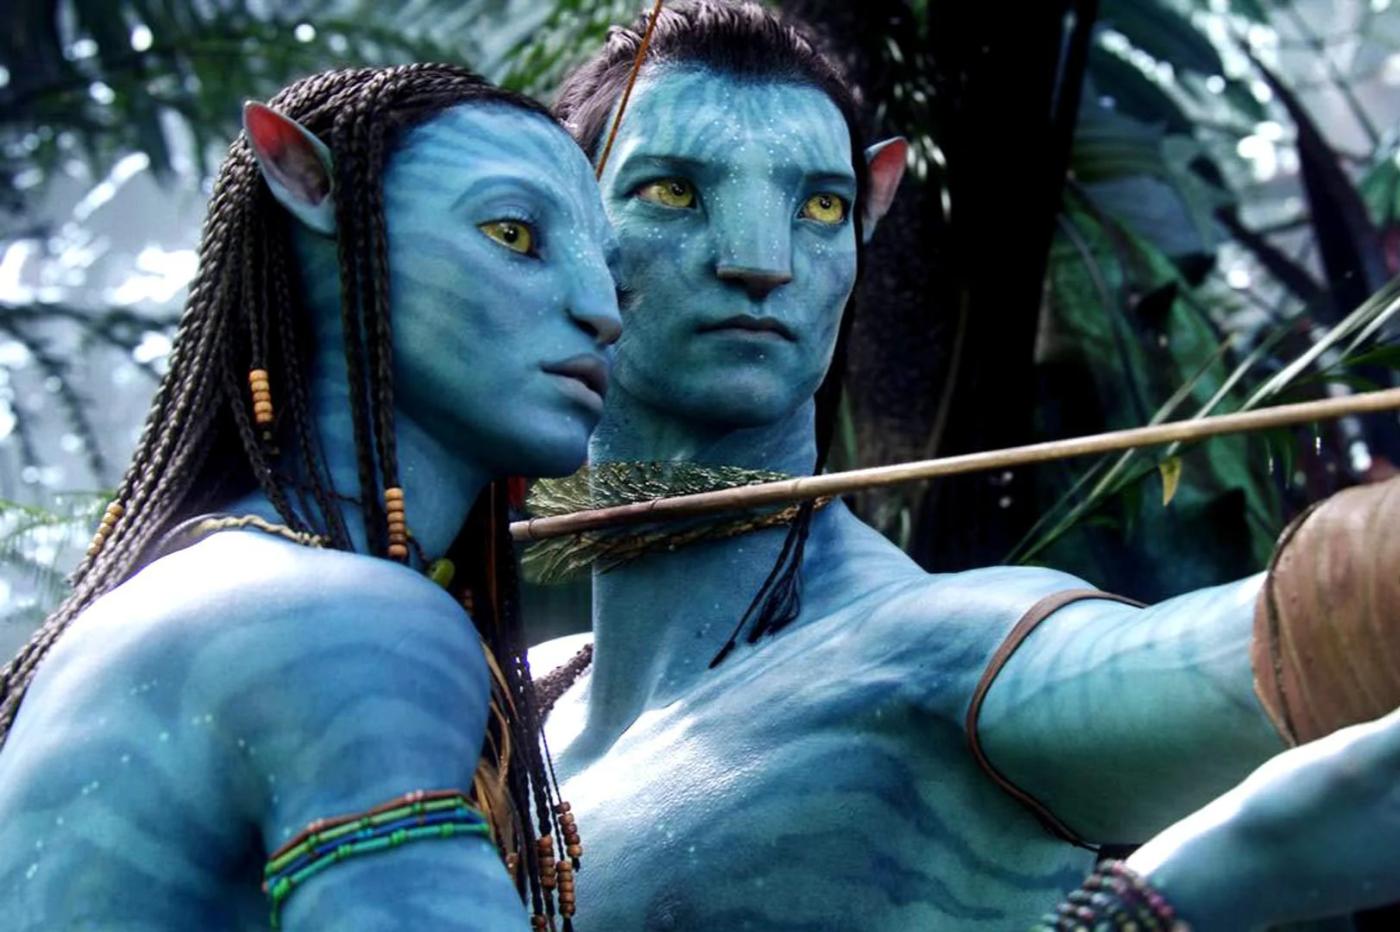 film Avatar